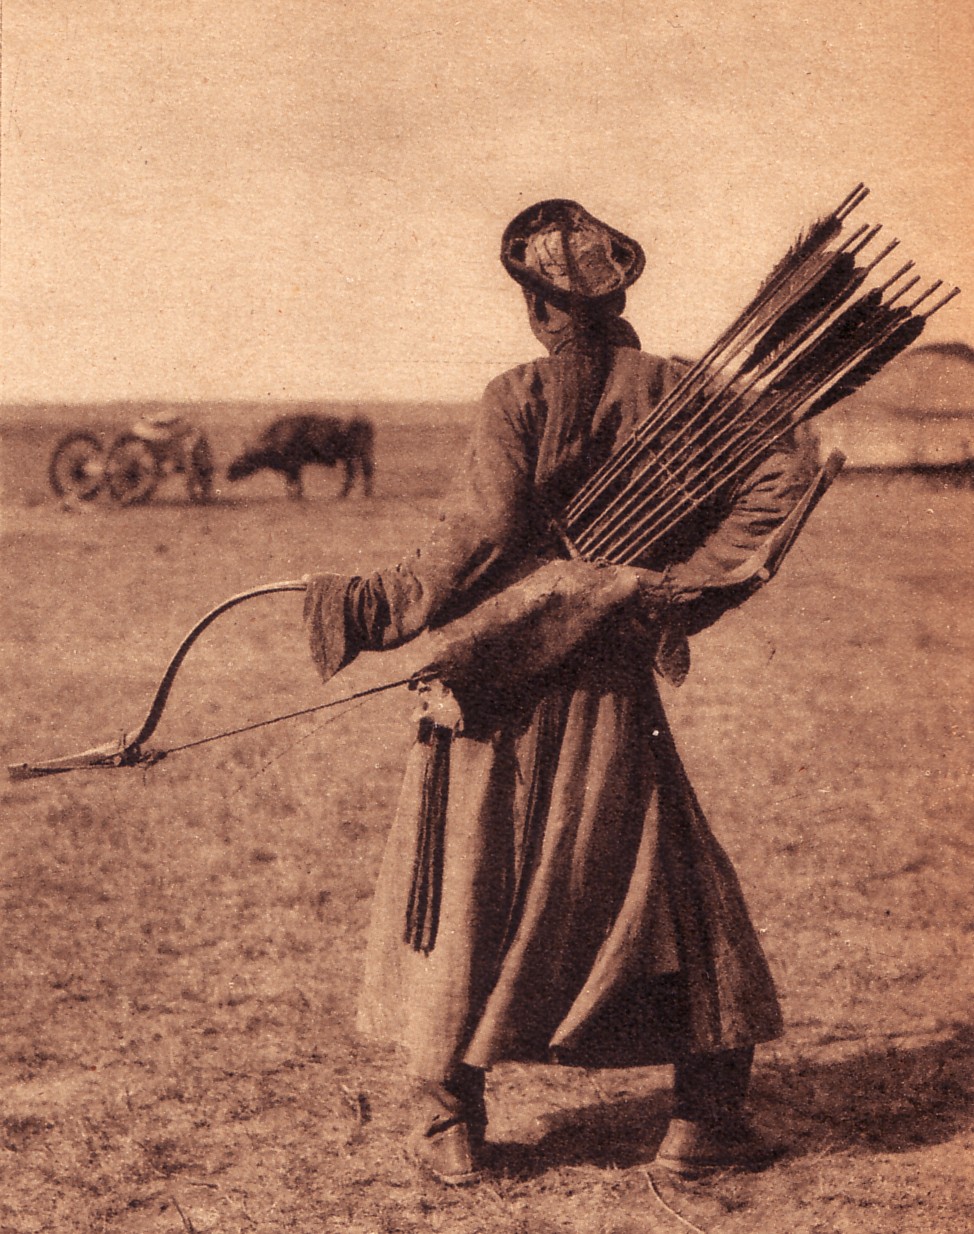 1mongol-archer-in-inner-mongolia-1940s_Q